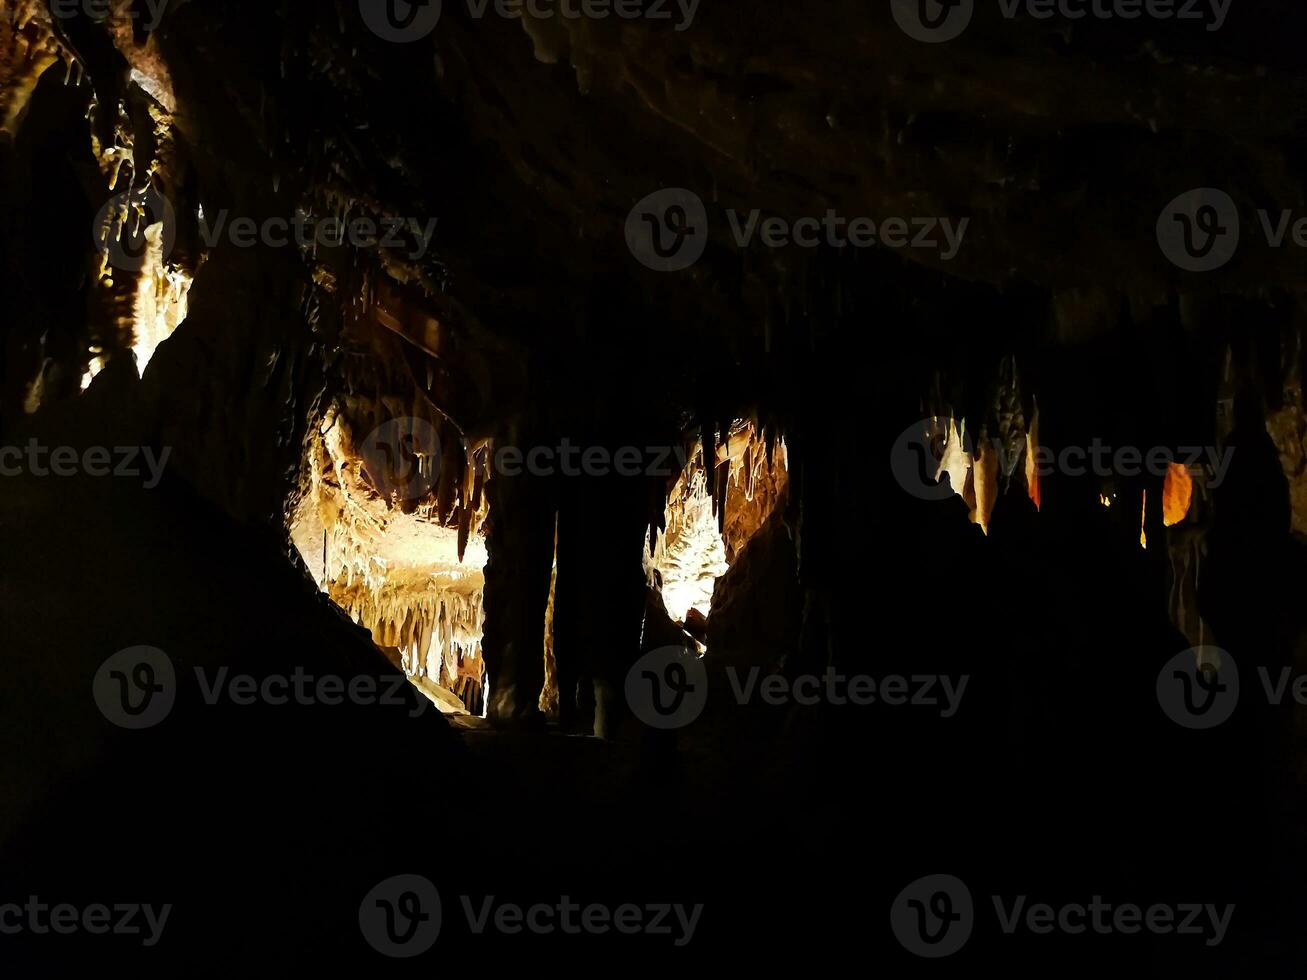 dettaglio di grotte nel il serra de mira d'Aire, nel Portogallo foto